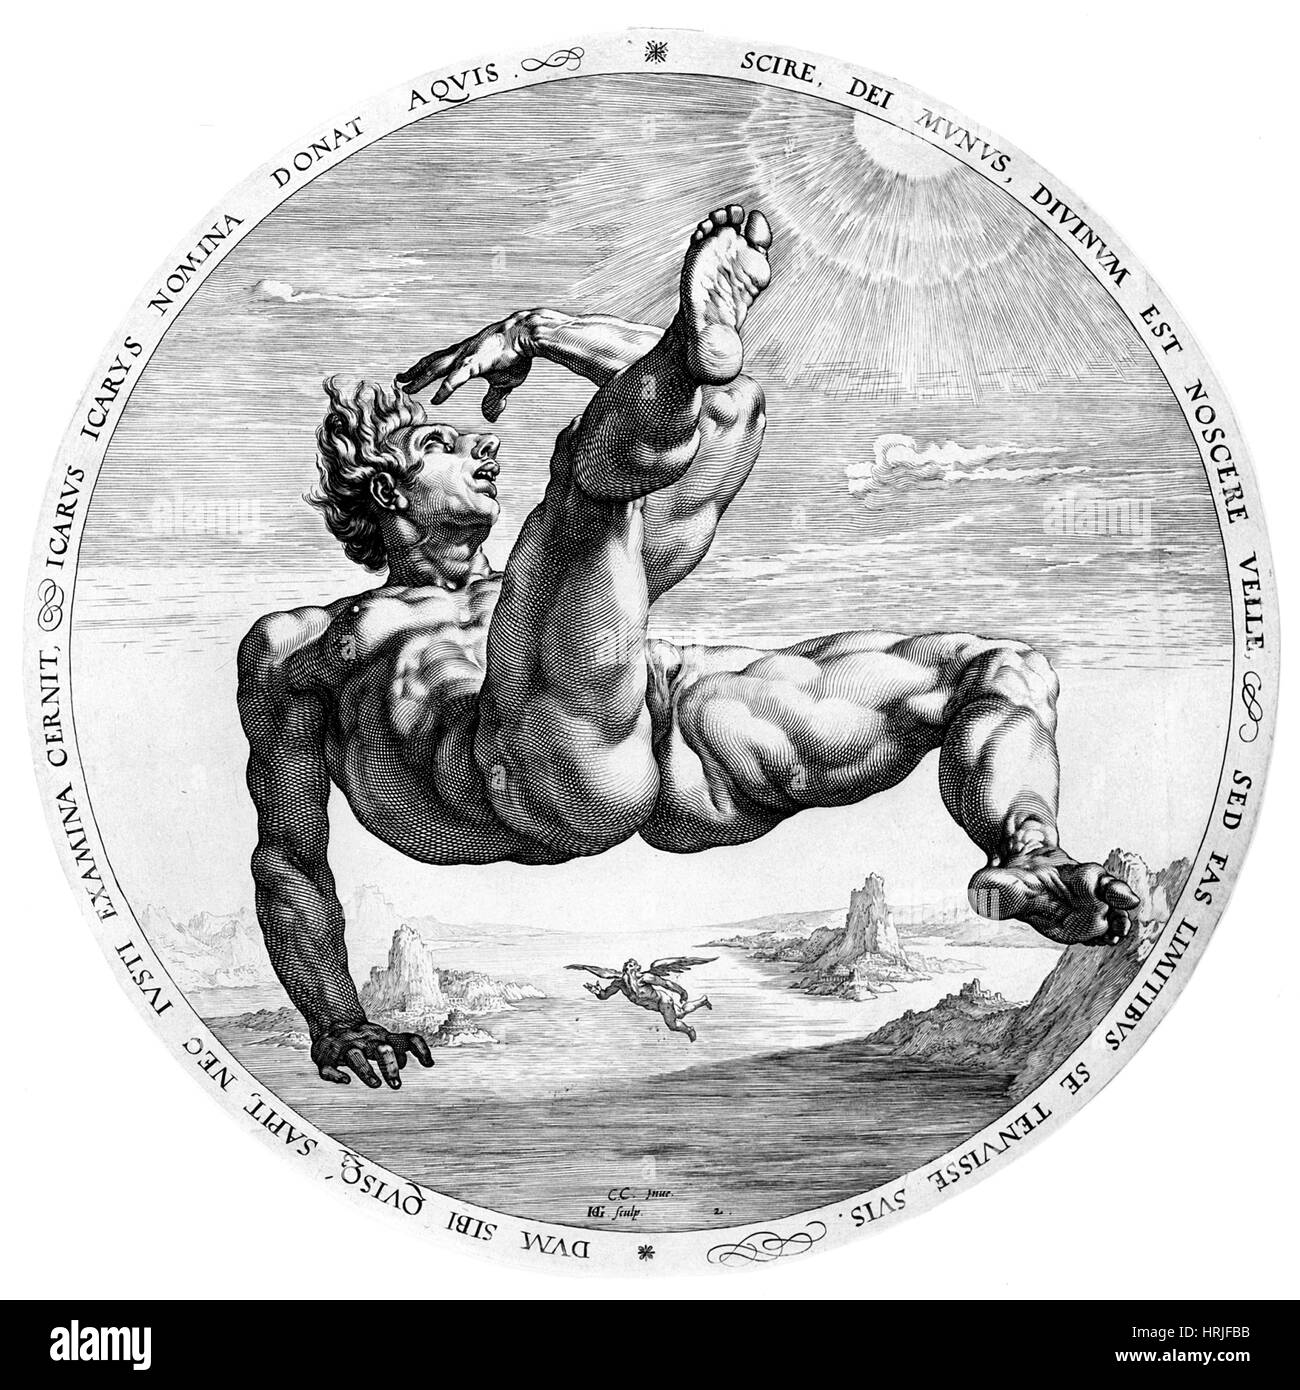 Chute d'Icare, la mythologie grecque Banque D'Images